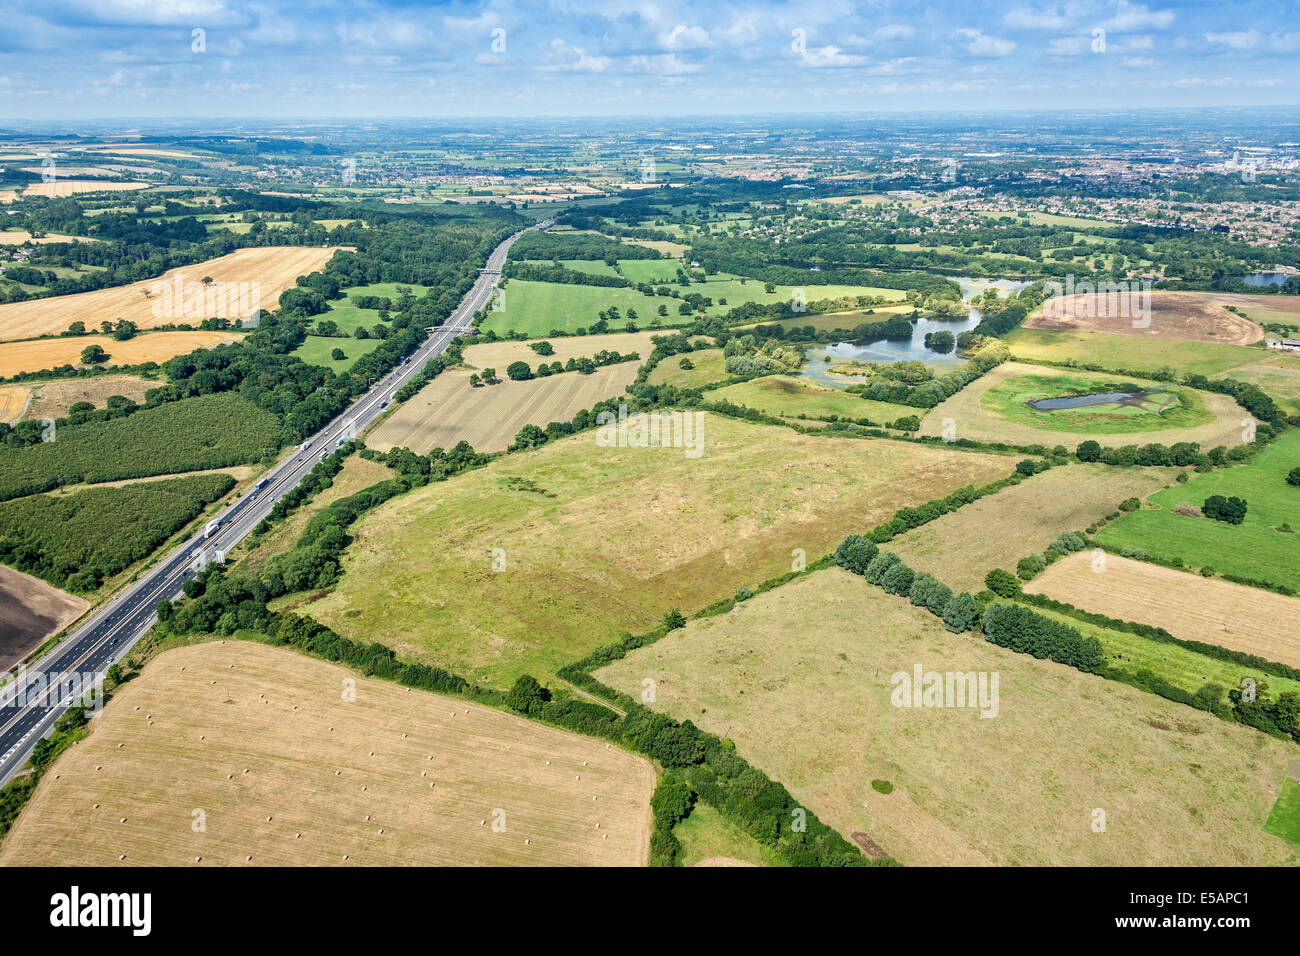 Vue aérienne de Coate Water Country Park et l'autoroute M4 à gauche face Swindon Wiltshire, Royaume-Uni. JMH6221 Banque D'Images